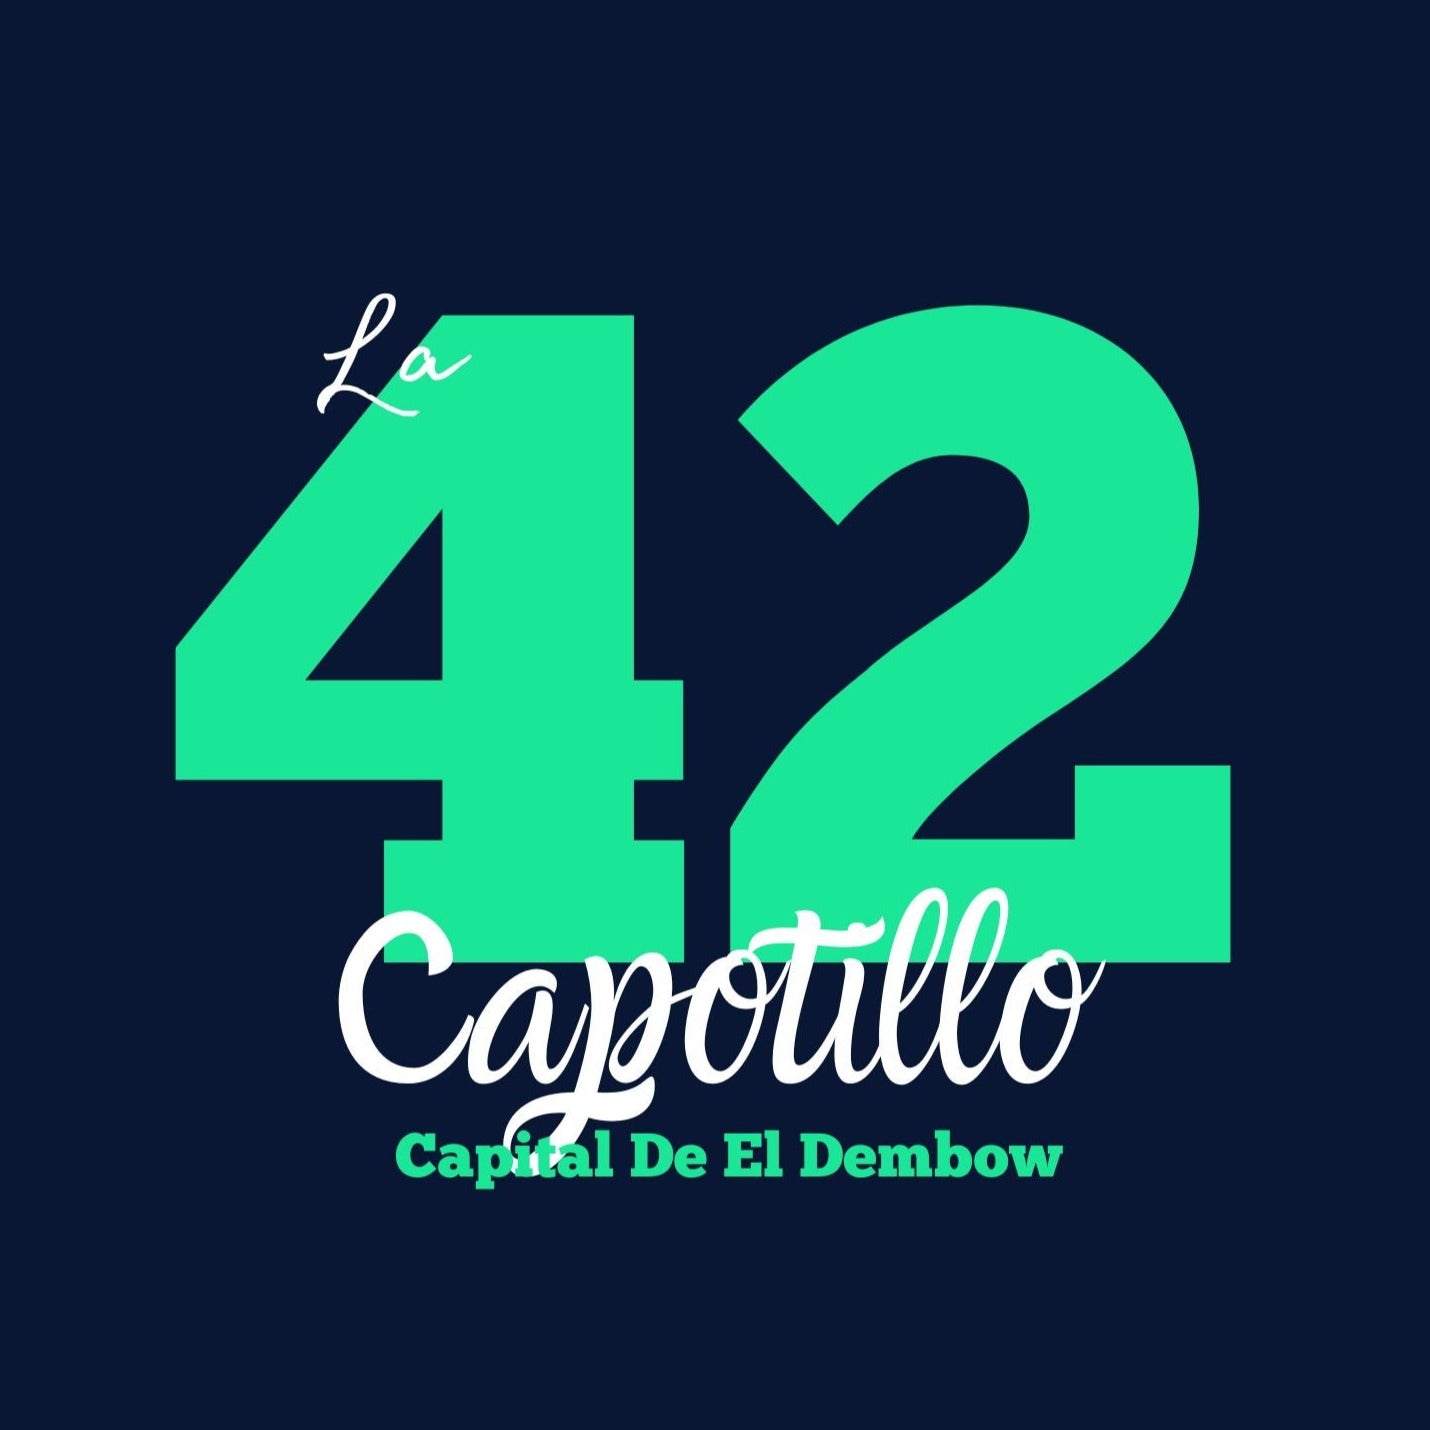 🇩🇴 La 42 x Dembow Capital Sweatshirt